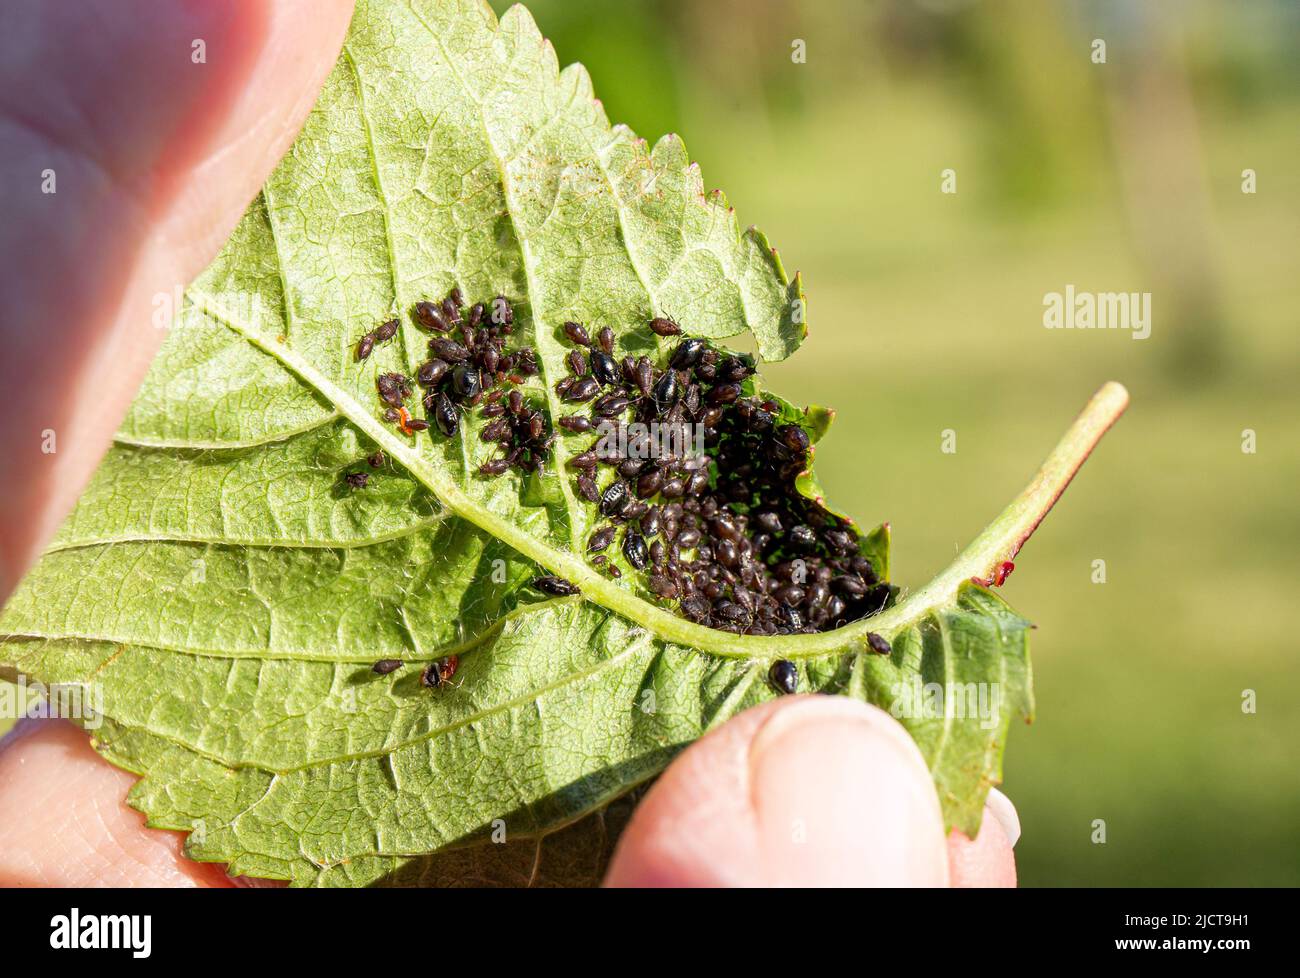 La mano de la persona que muestra hormigas creó la granja de los áfidos de Periphyllus en la hoja de la cereza en primavera para comer su jarabe dulce como residuo. Foto de stock